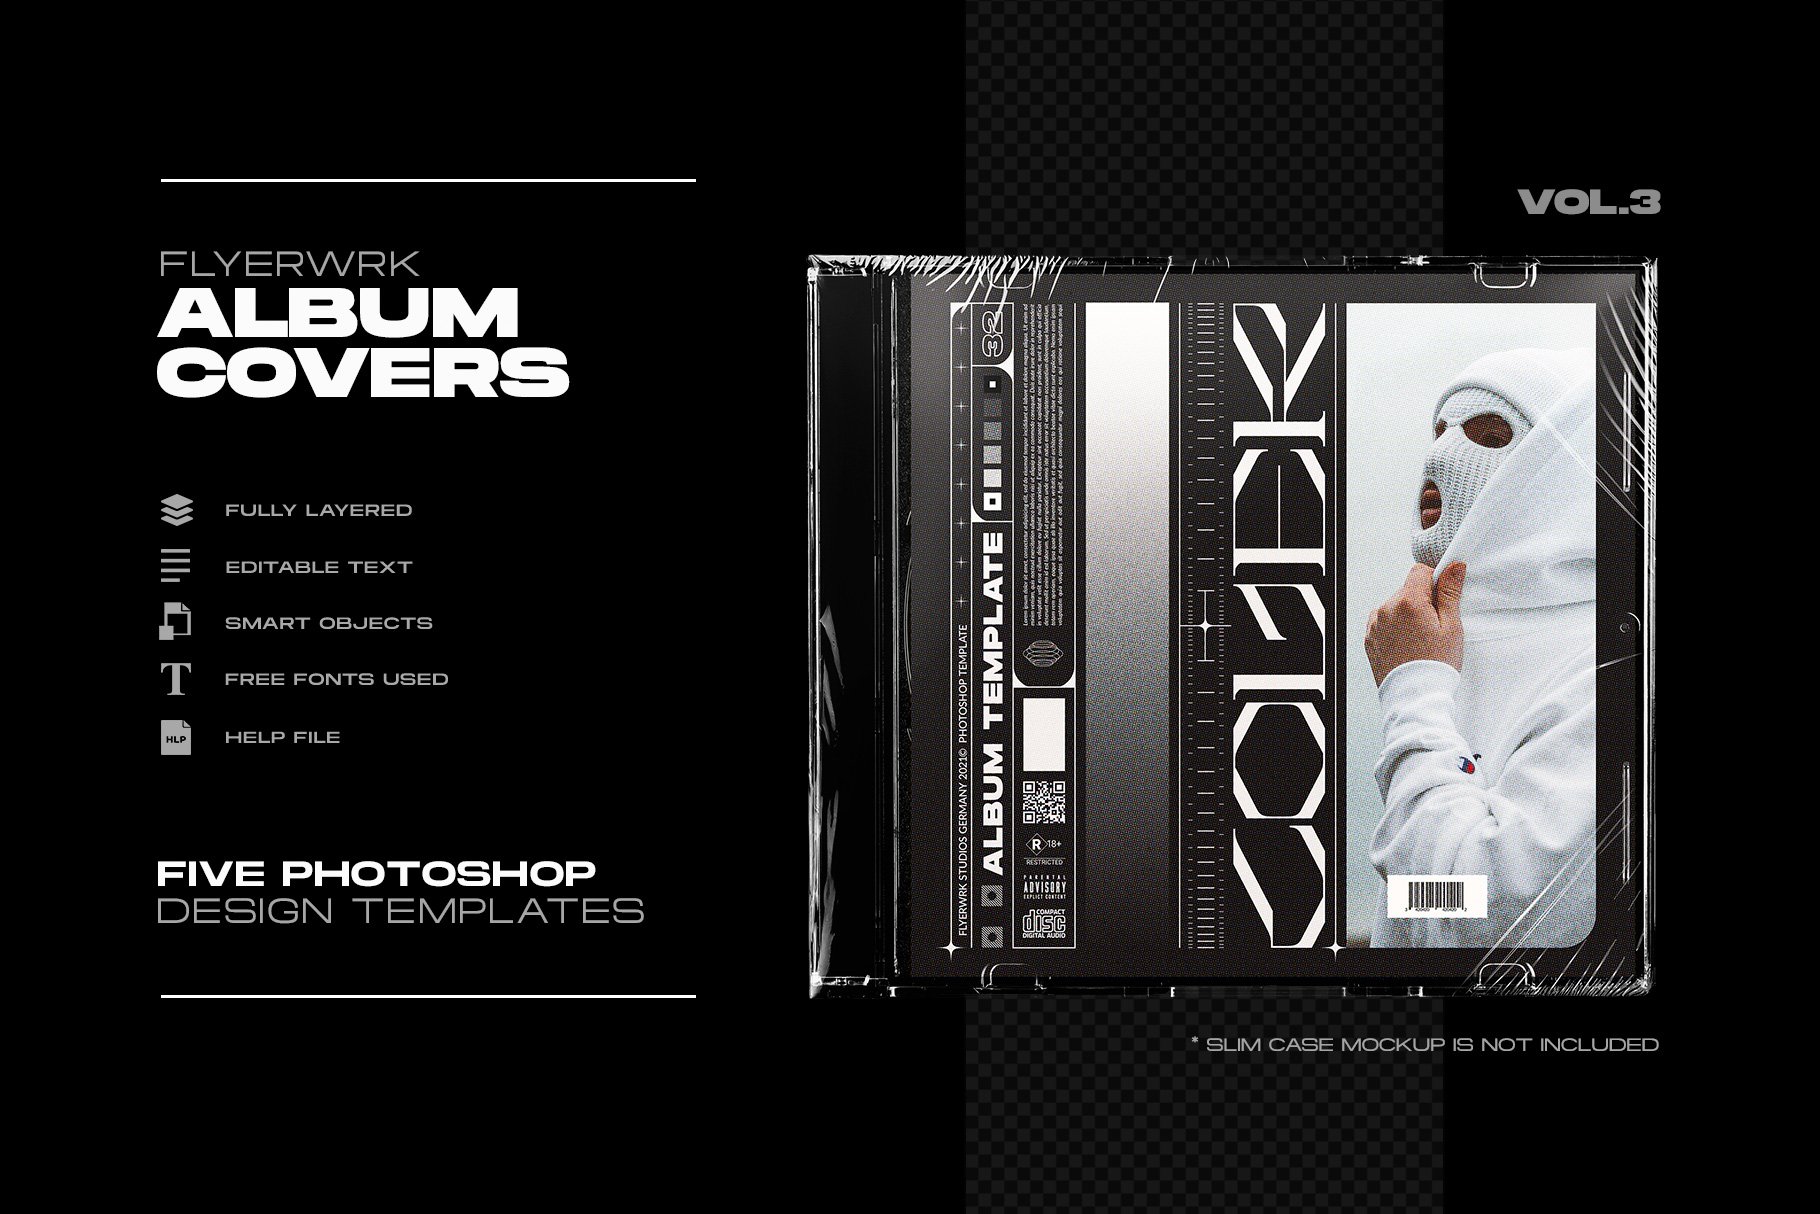 酸性潮流嘻哈艺术音乐CD专辑唱片封面海报设计排版ps模板源文件